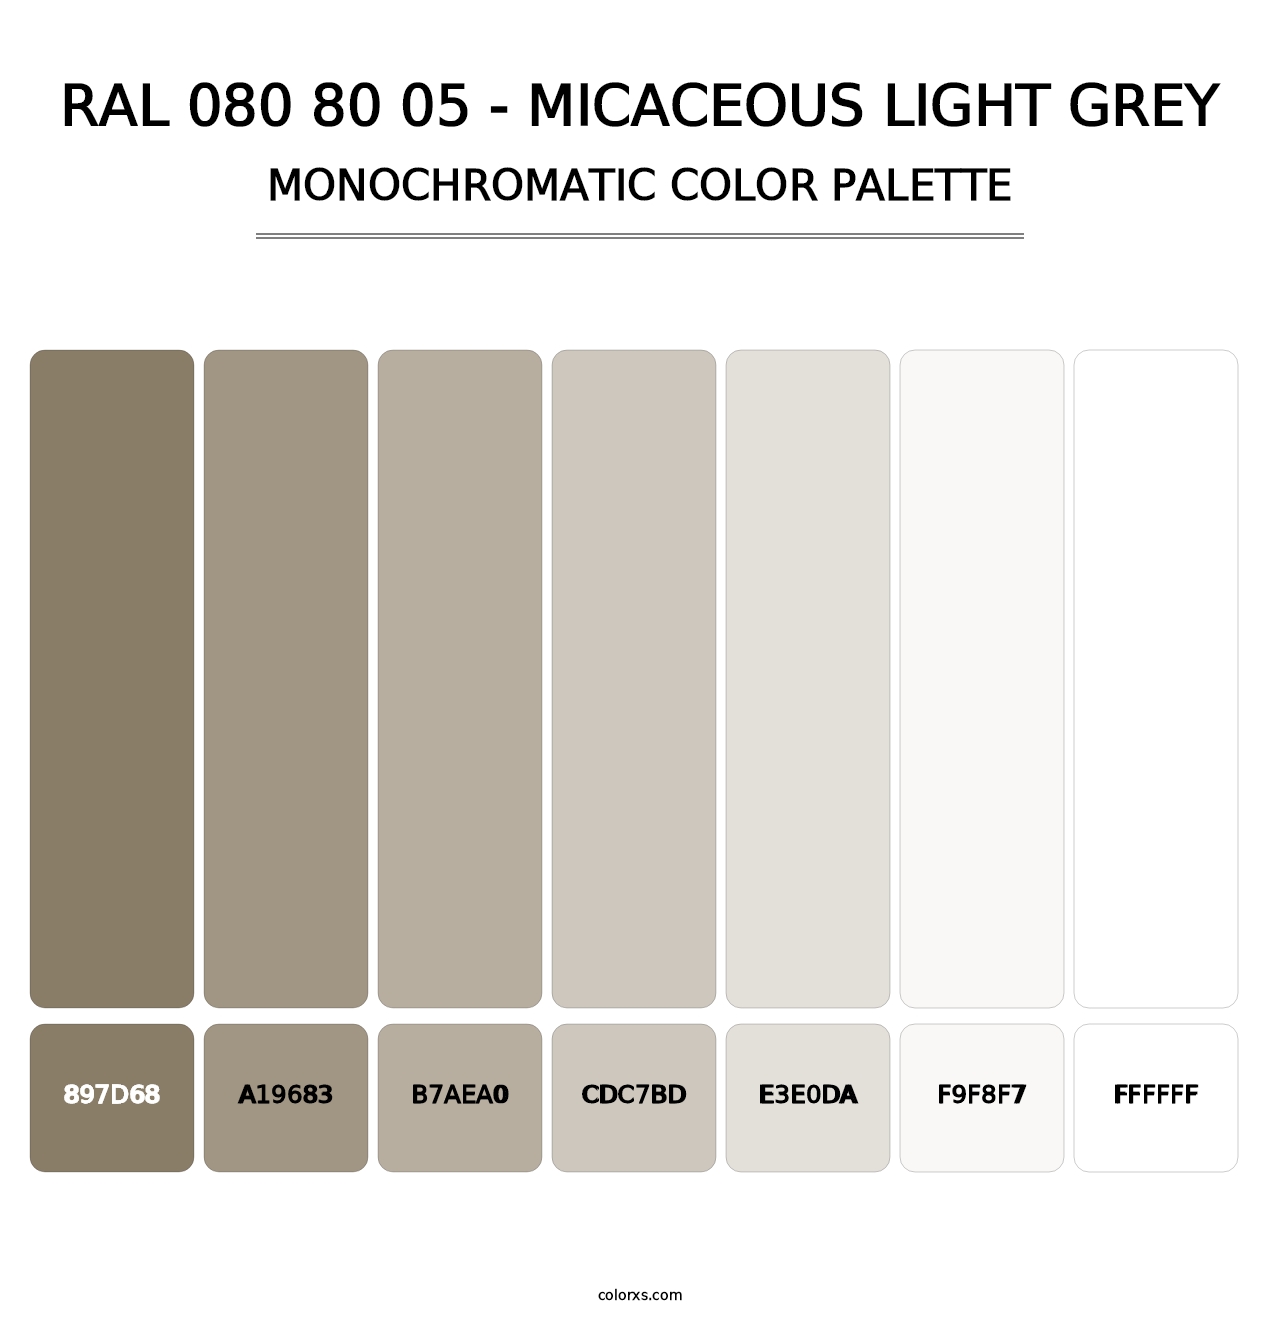 RAL 080 80 05 - Micaceous Light Grey - Monochromatic Color Palette